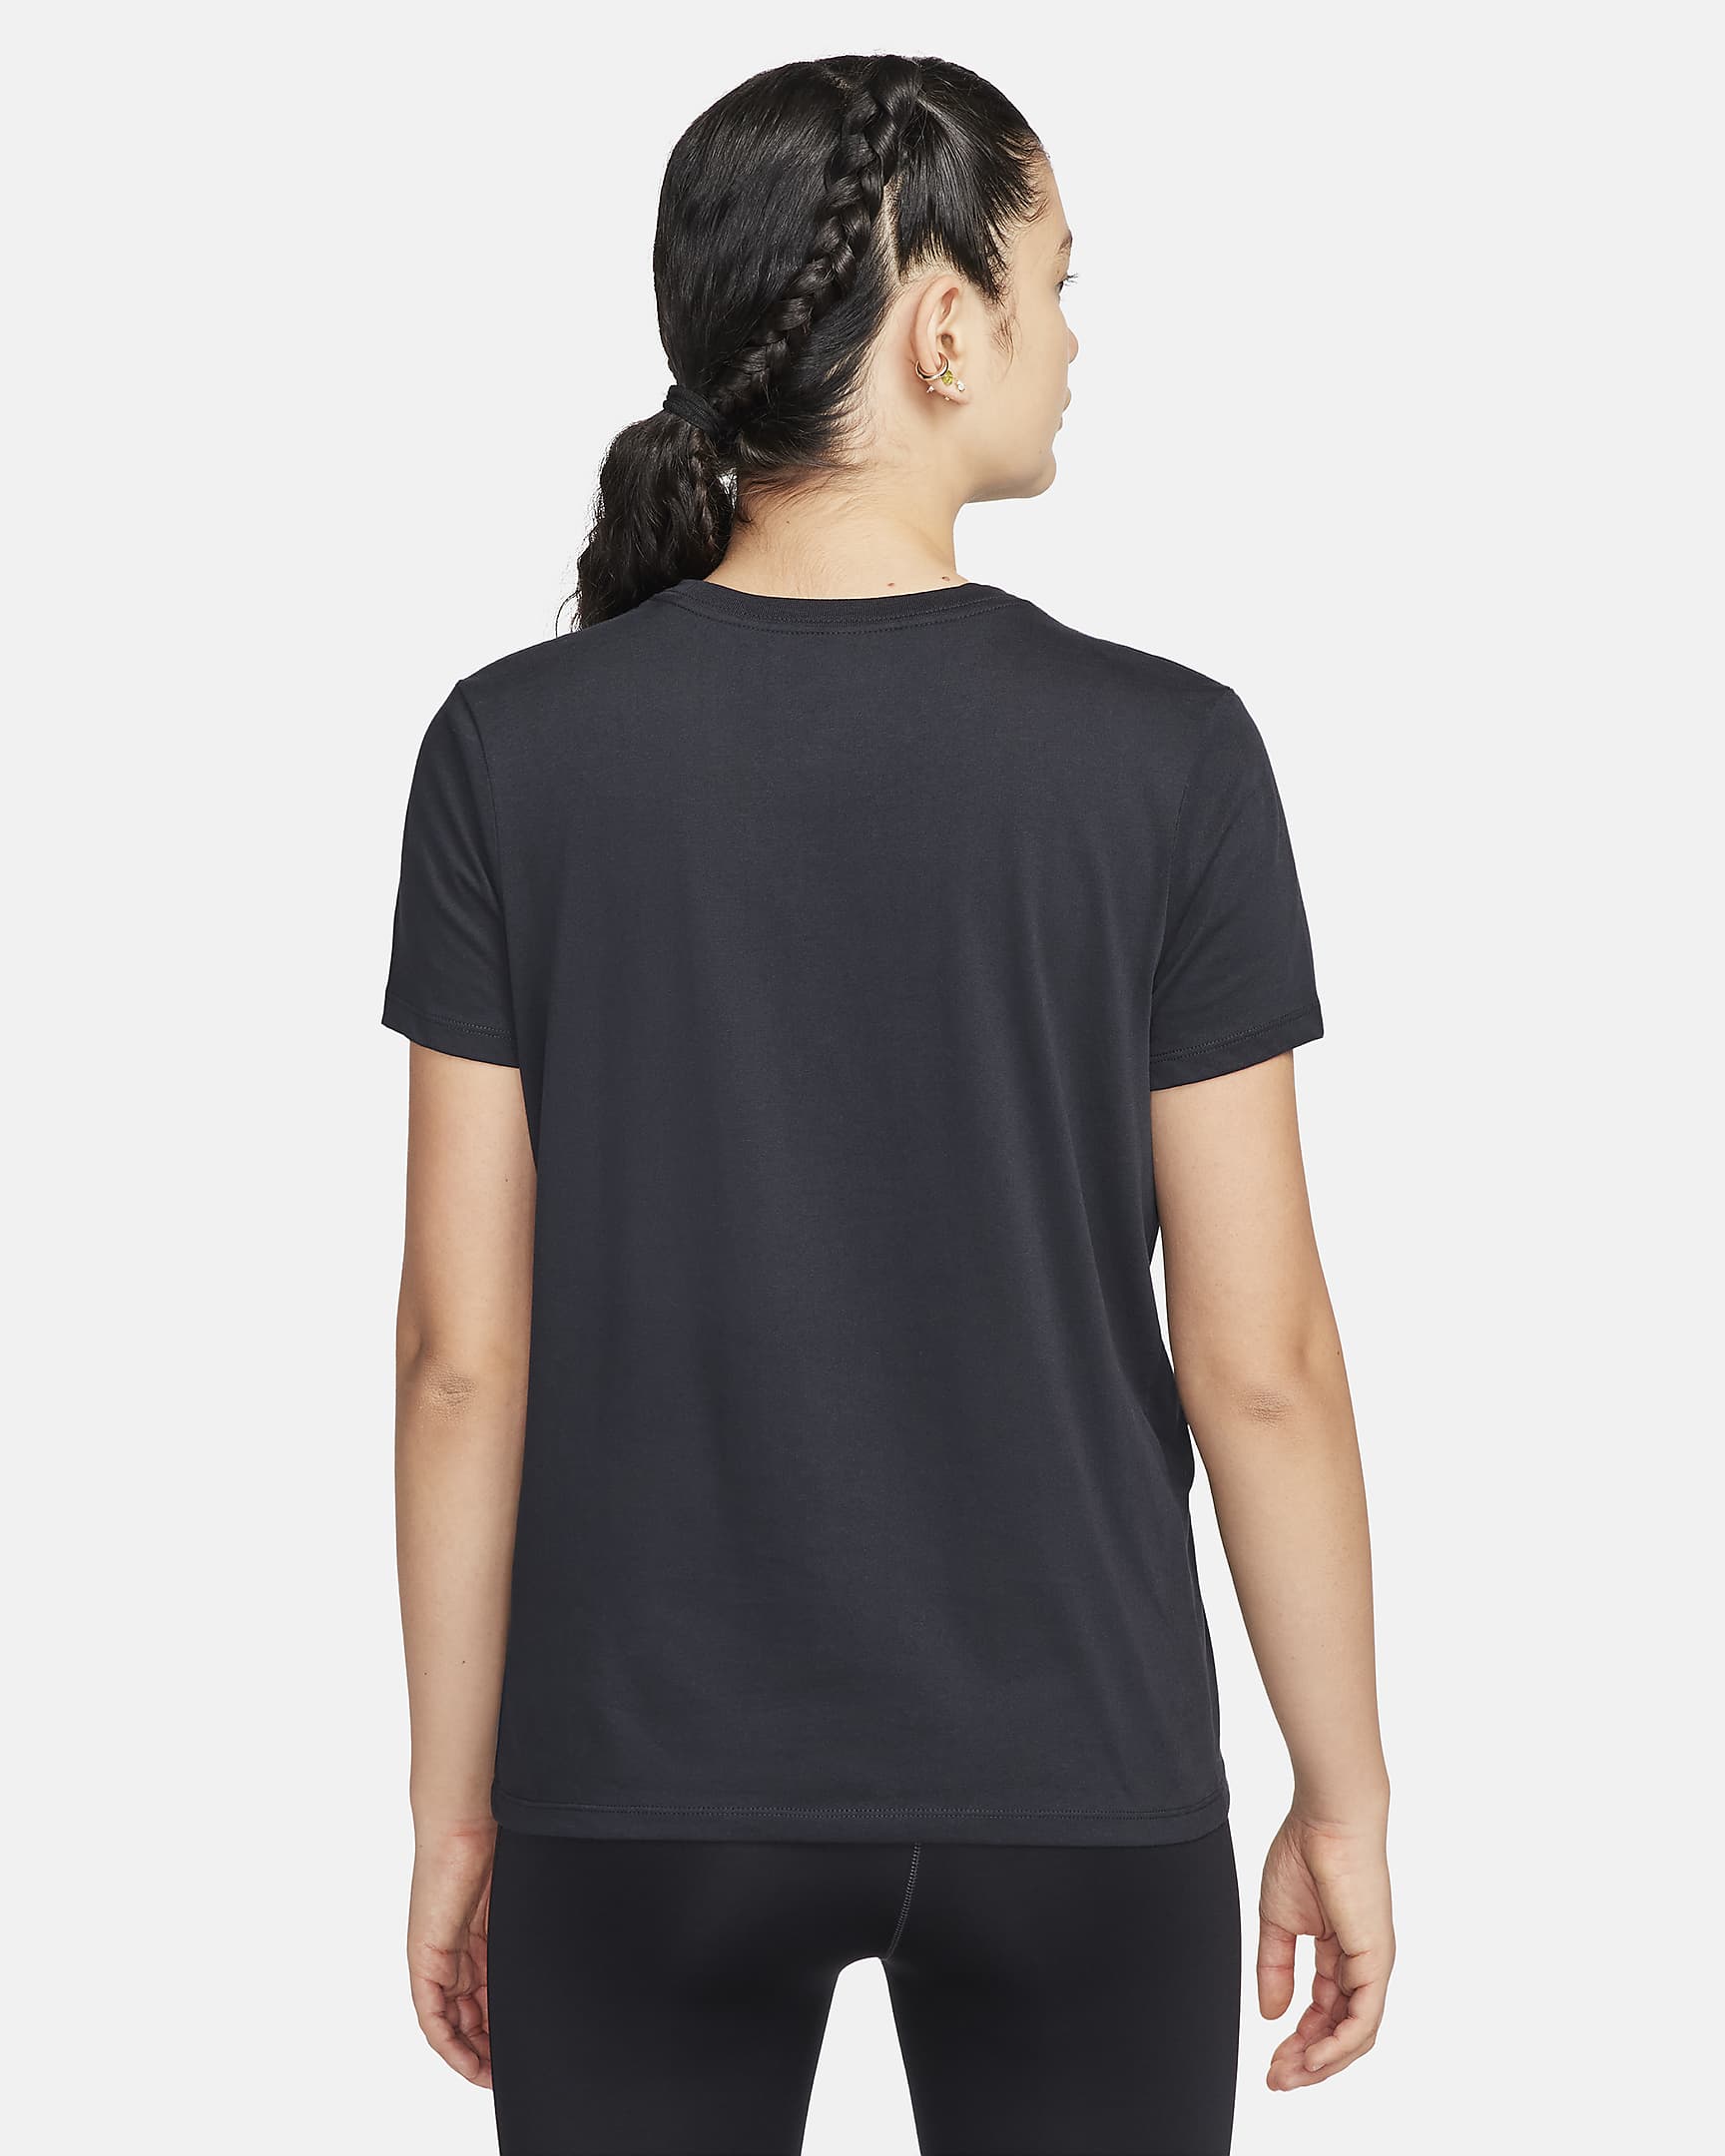 Nike Trail Women's Dri-FIT T-Shirt - Black